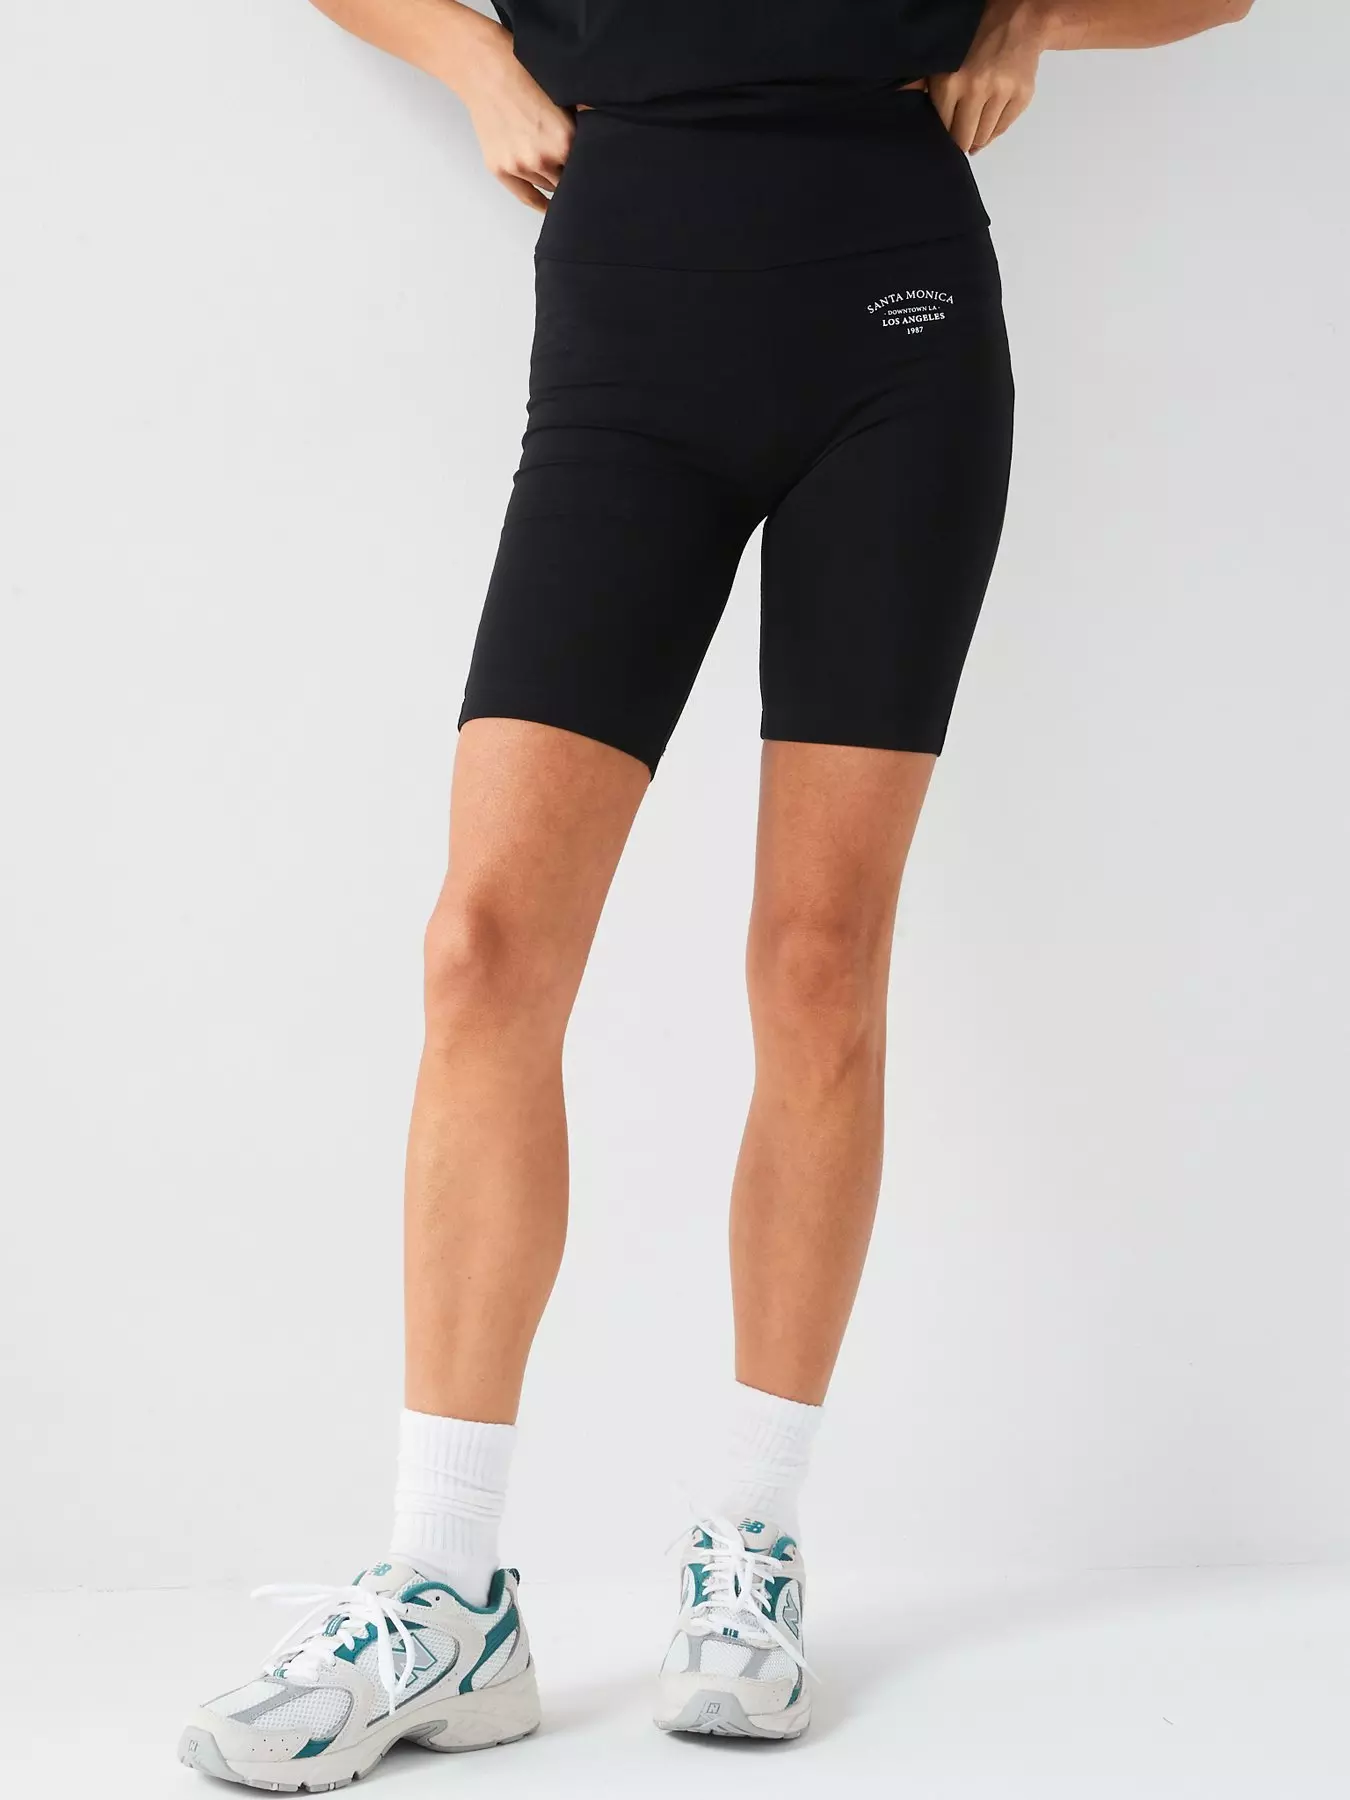 Cycling Shorts, Shorts, Women